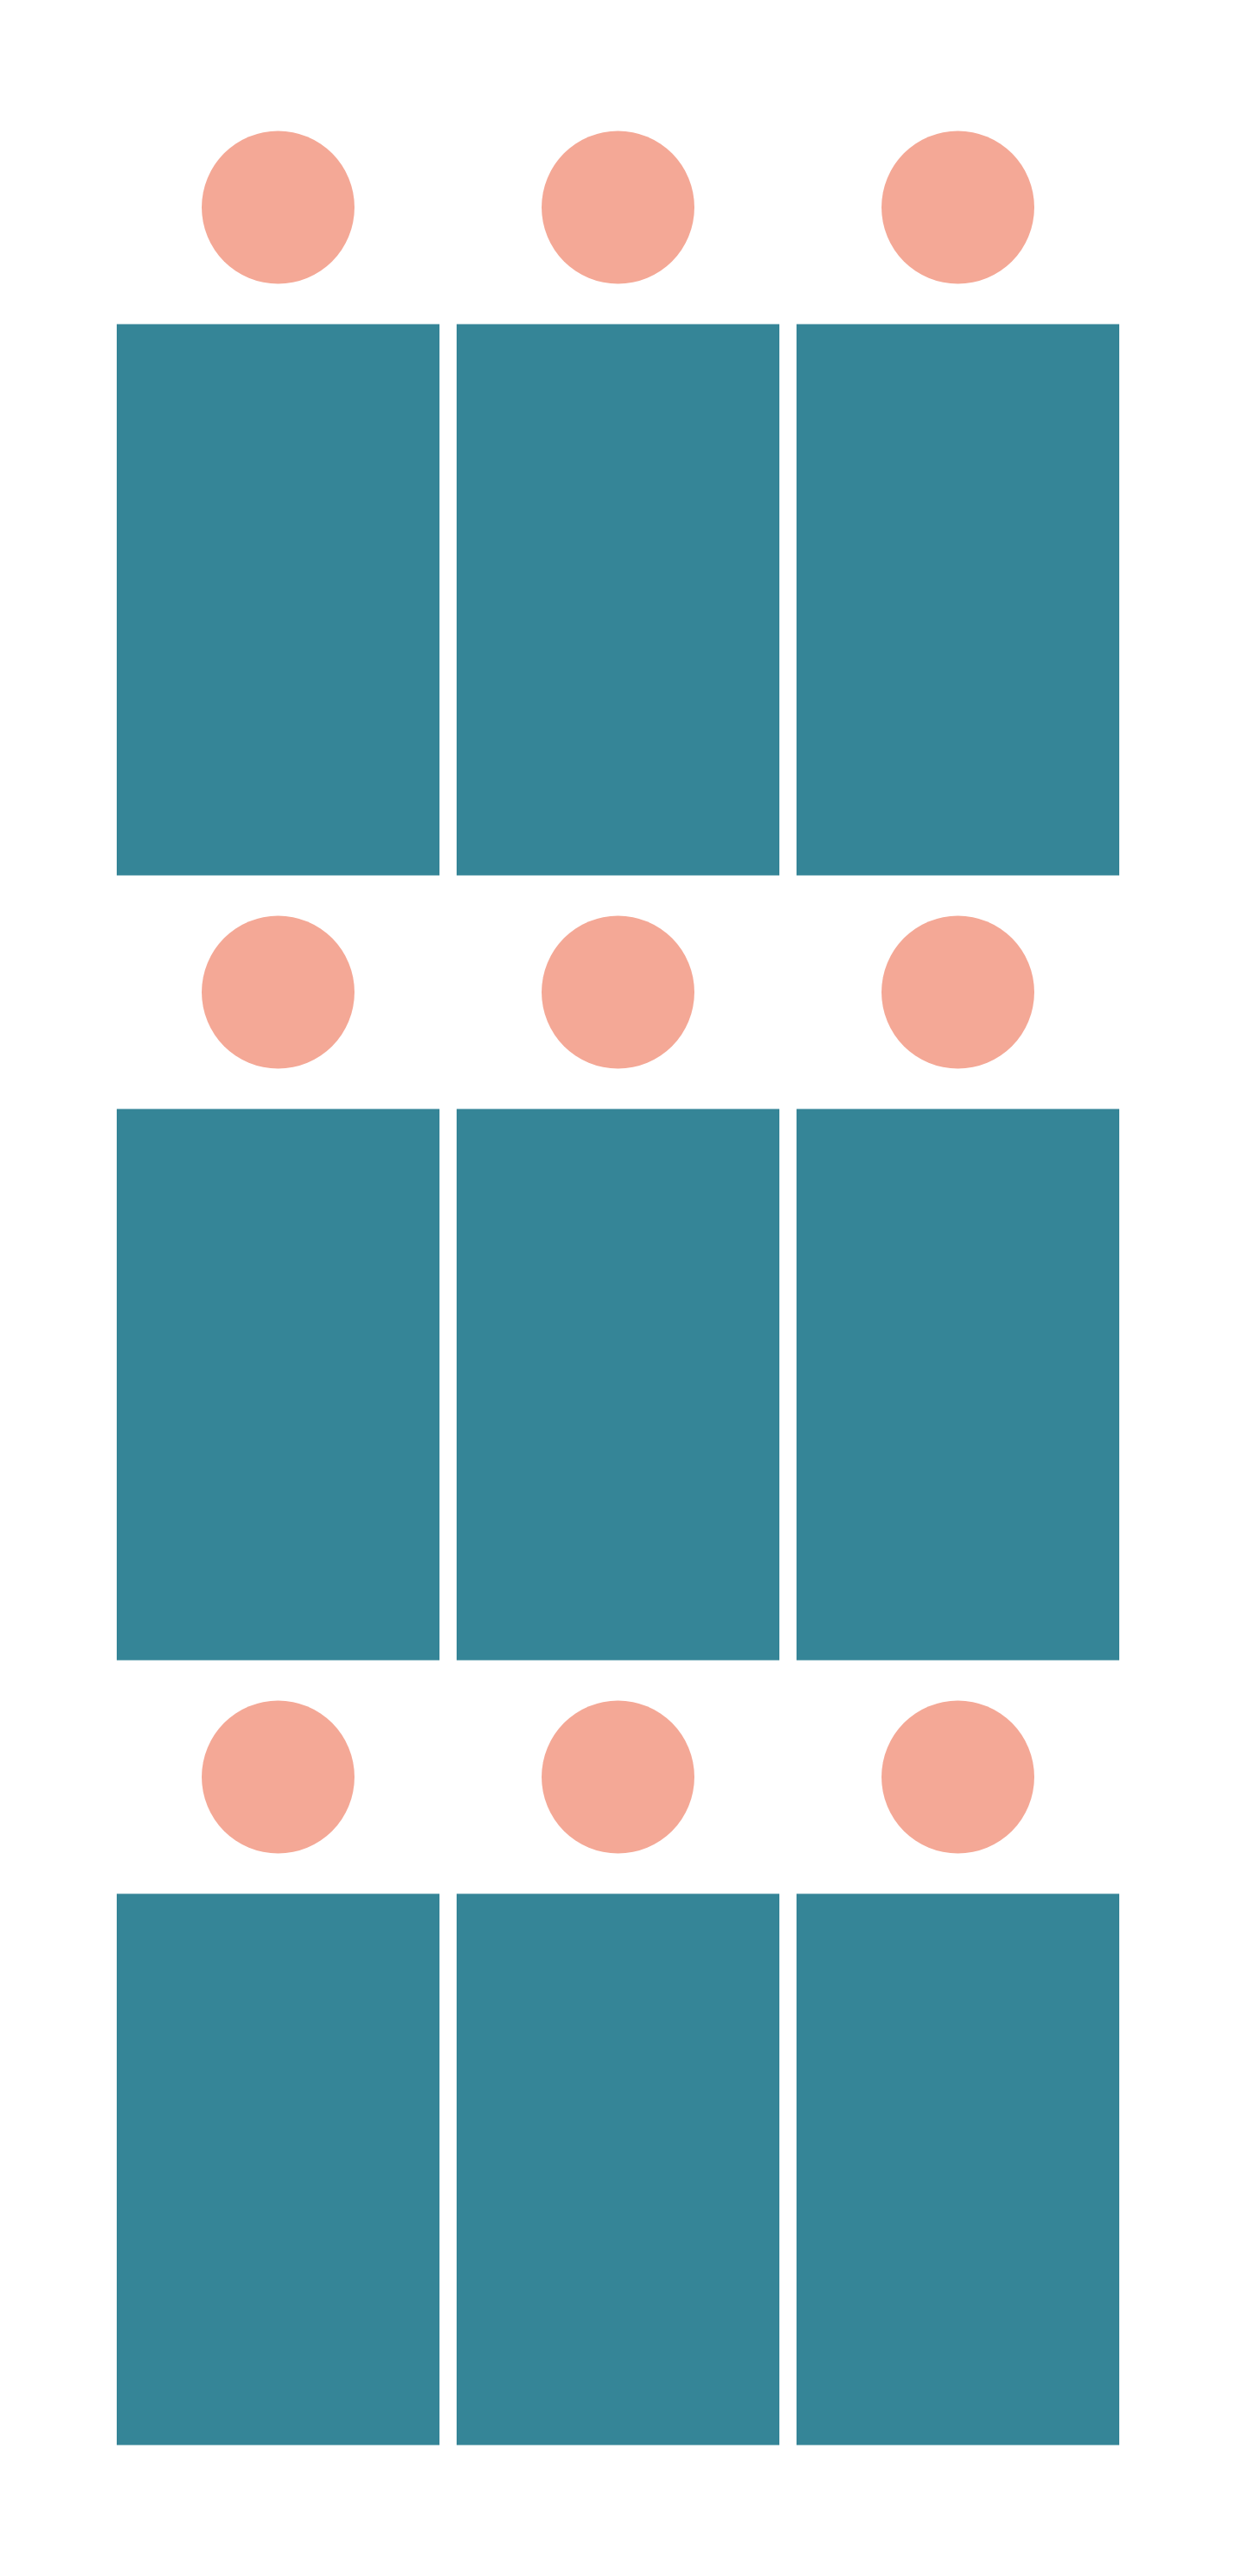 shape layout 2